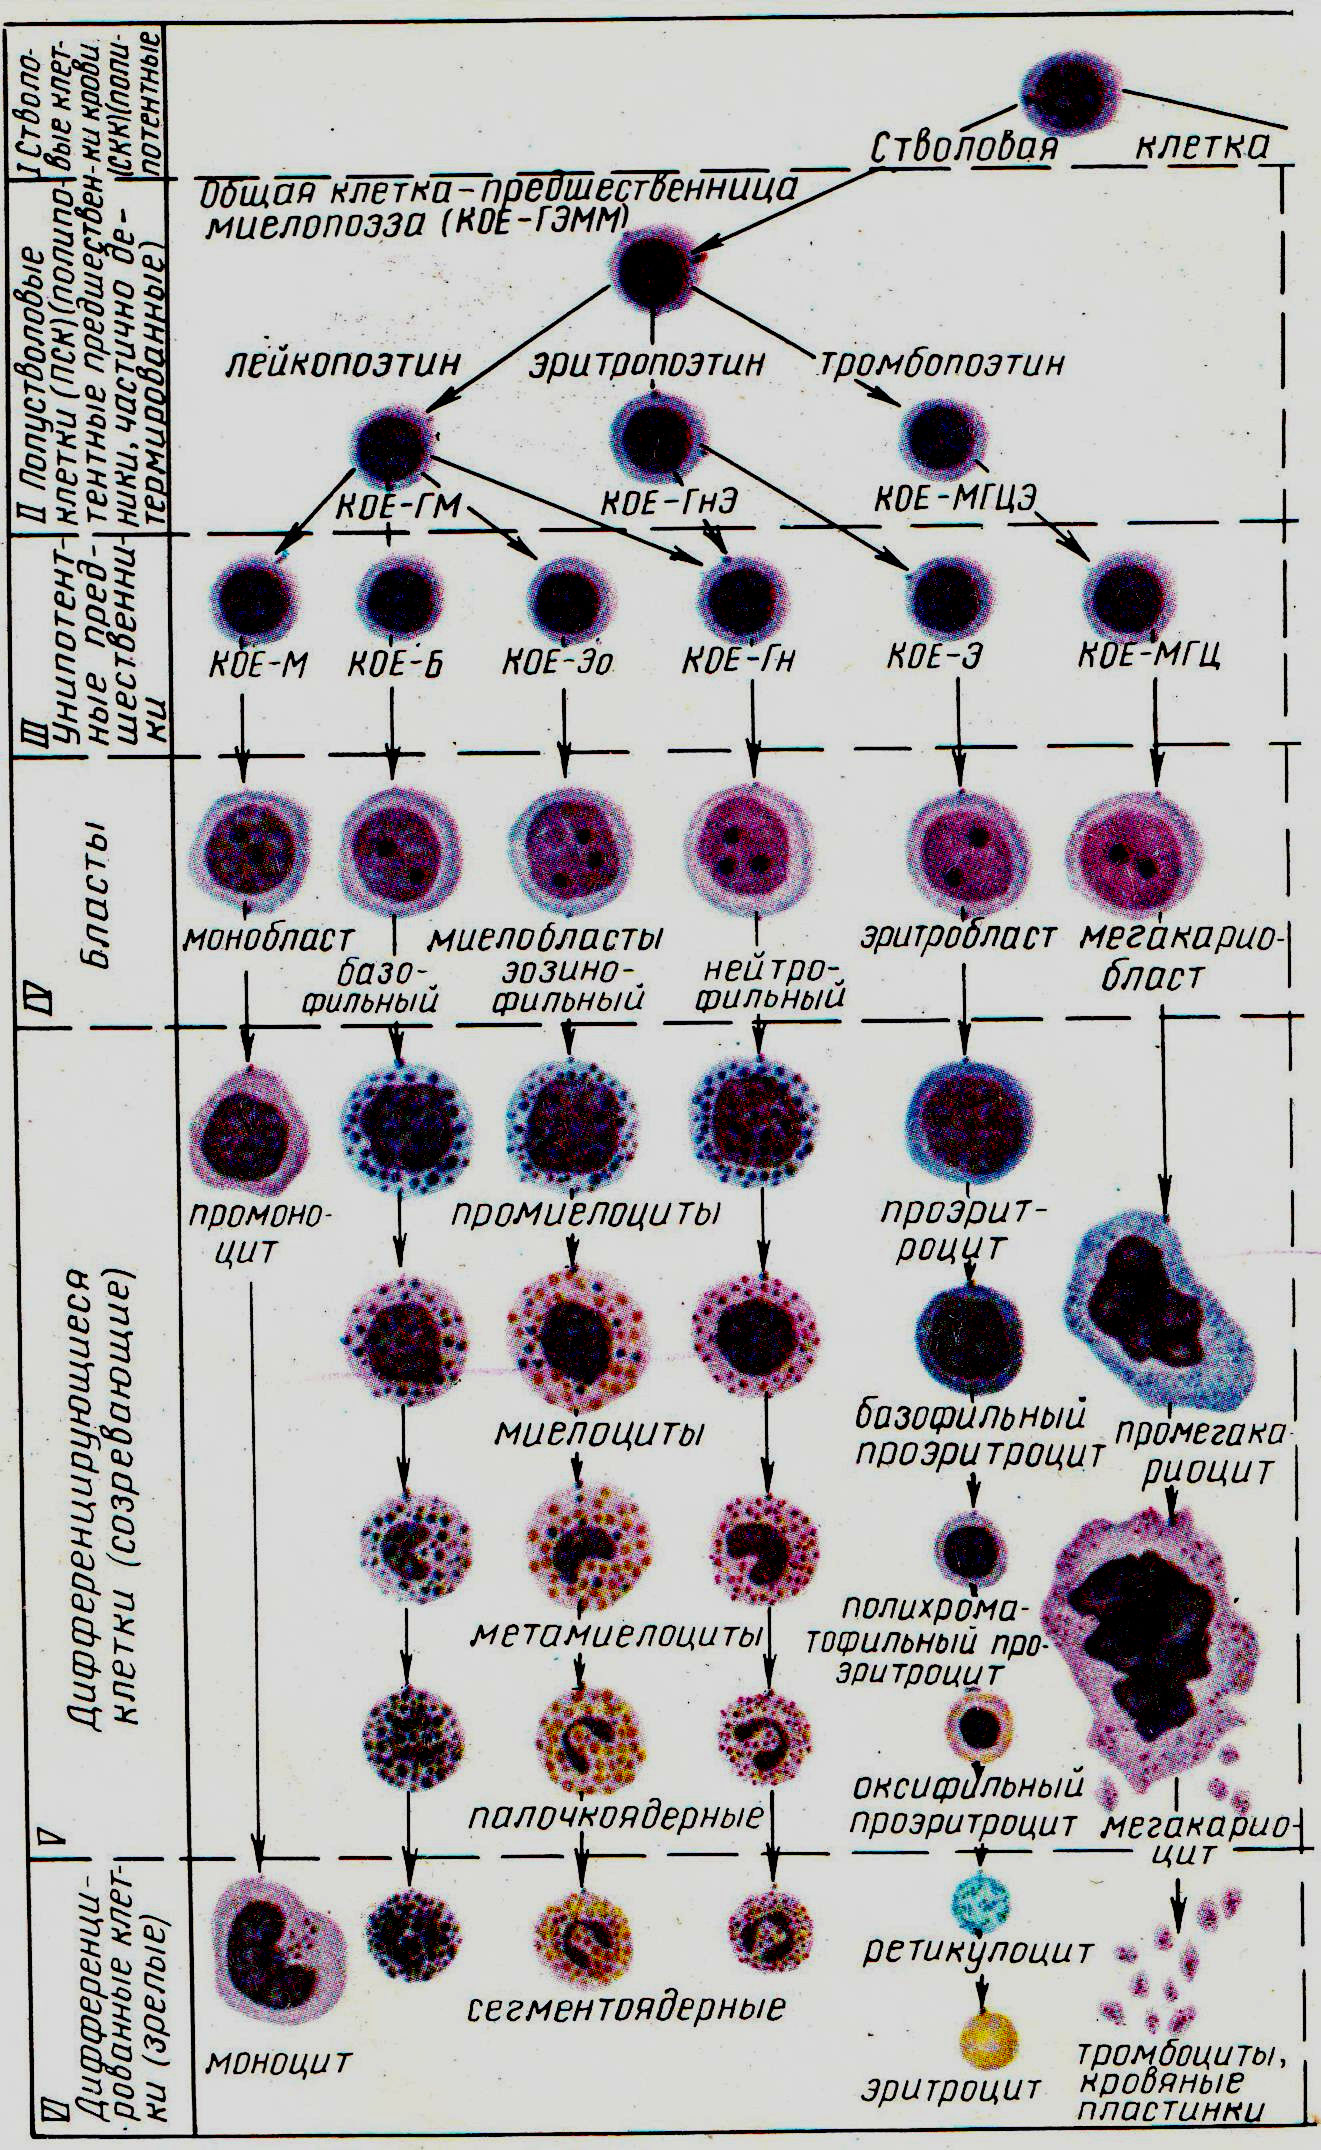 Деление клеток крови. Кровь схема кроветворения по и.л Черткову а.и Воробьеву. Схема образования клеток крови. Схема гемопоэза лейкоцитов. Схема дифференцировки клеток крови.